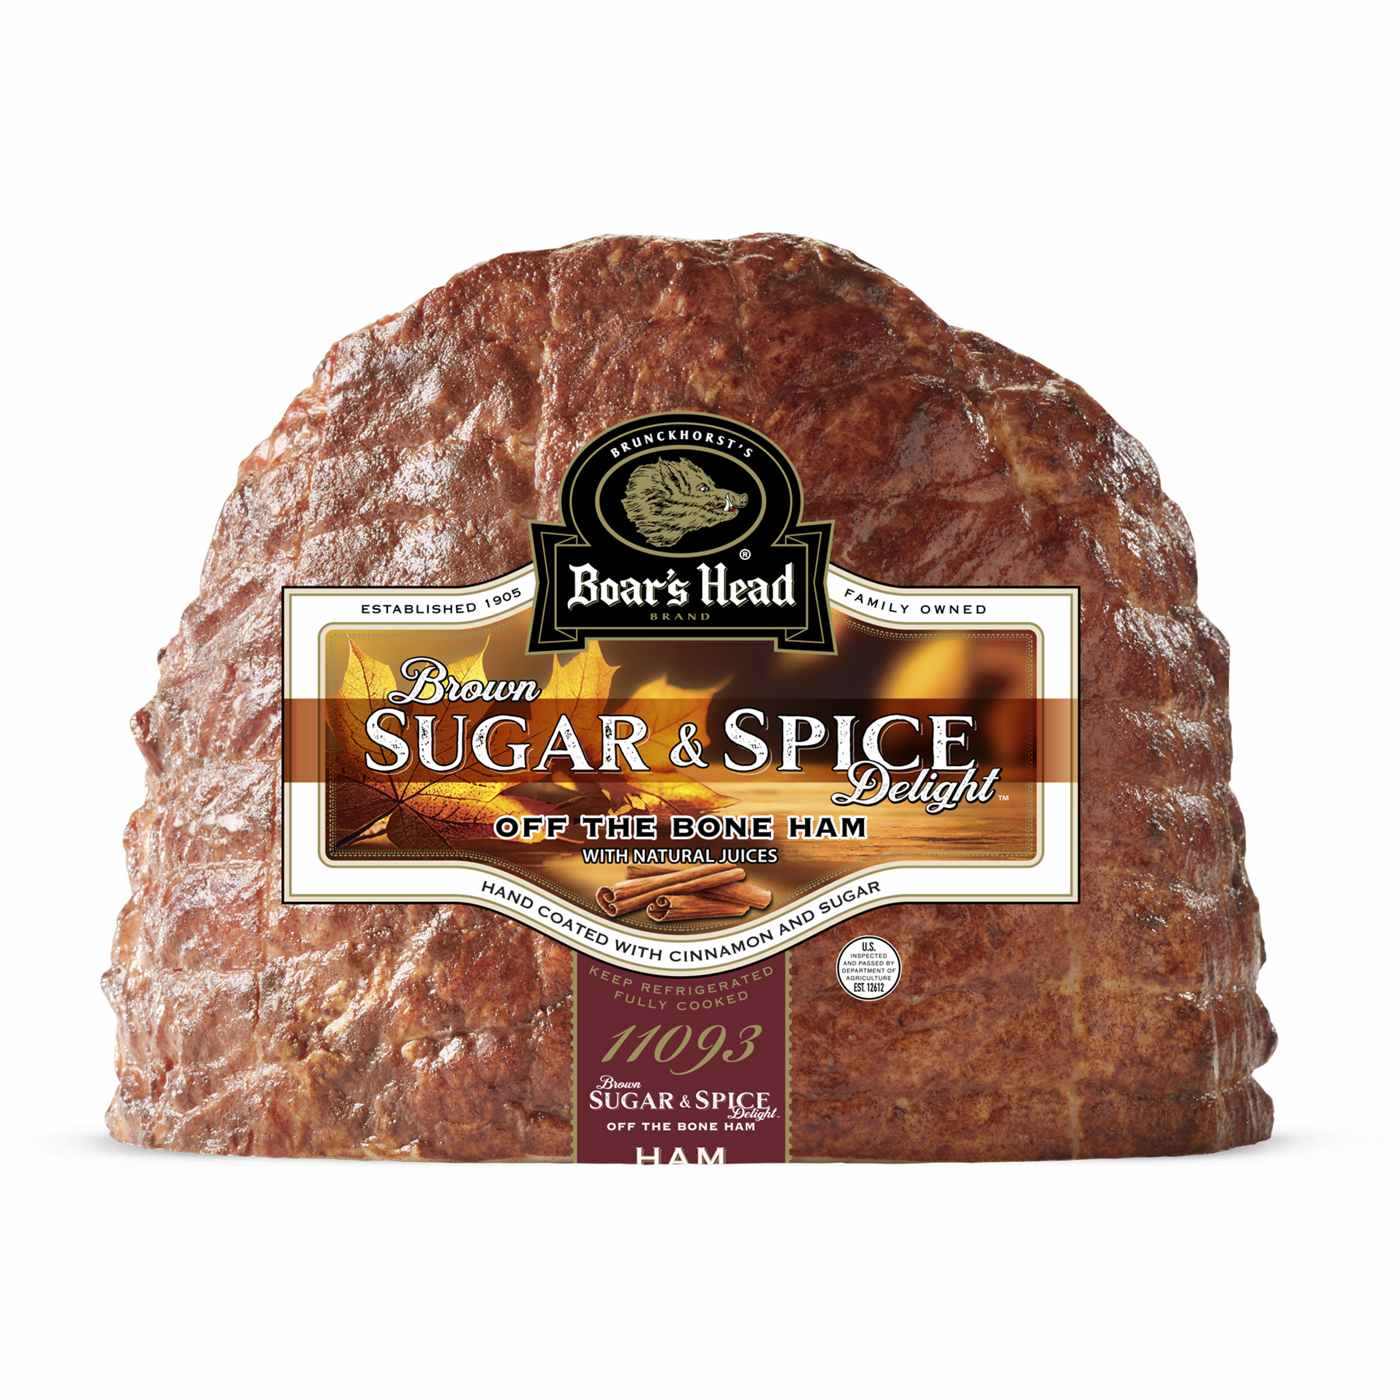 Boar's Head Brown Sugar & Spice Delight Off the Bone Ham; image 1 of 2